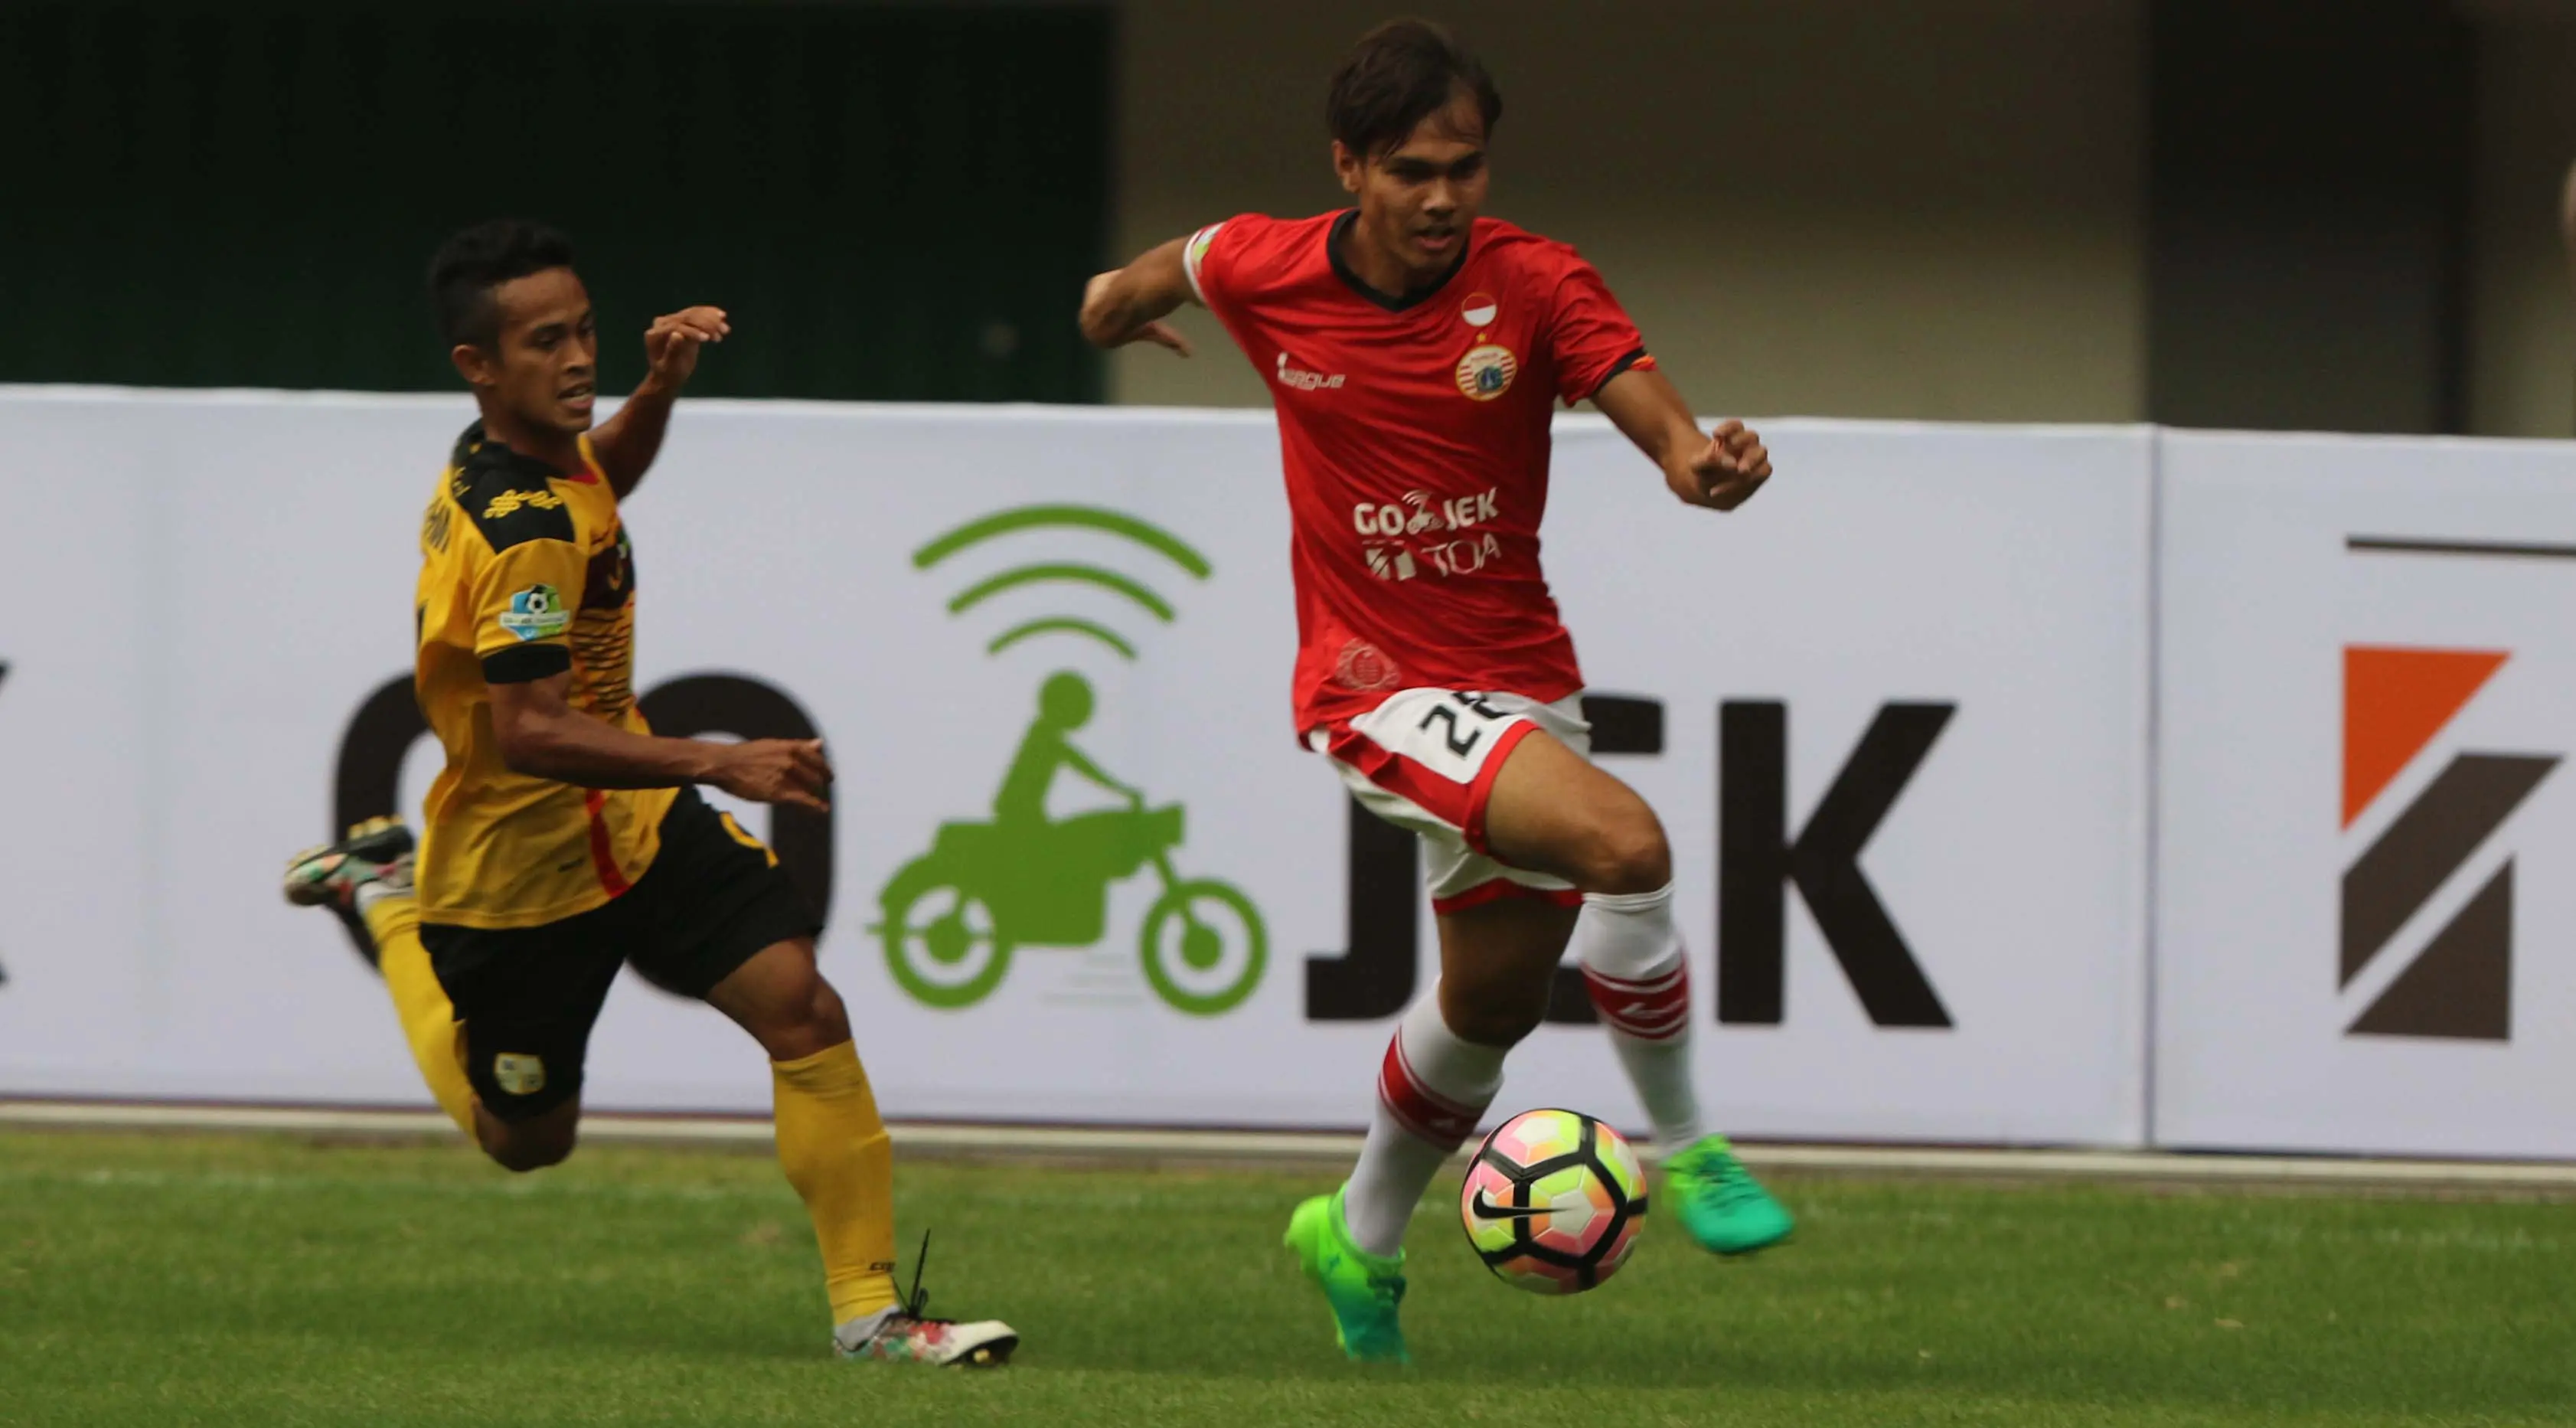 Bek Persija Jakarta M Rezaldi Hehanusa (kanan) melewati penggawa Barito Putera Agi Pratama pada laga Liga 1 di Stadion Patriot, Bekasi, Sabtu (22/4/2017). (Liputan6.com/Gempur M Surya)